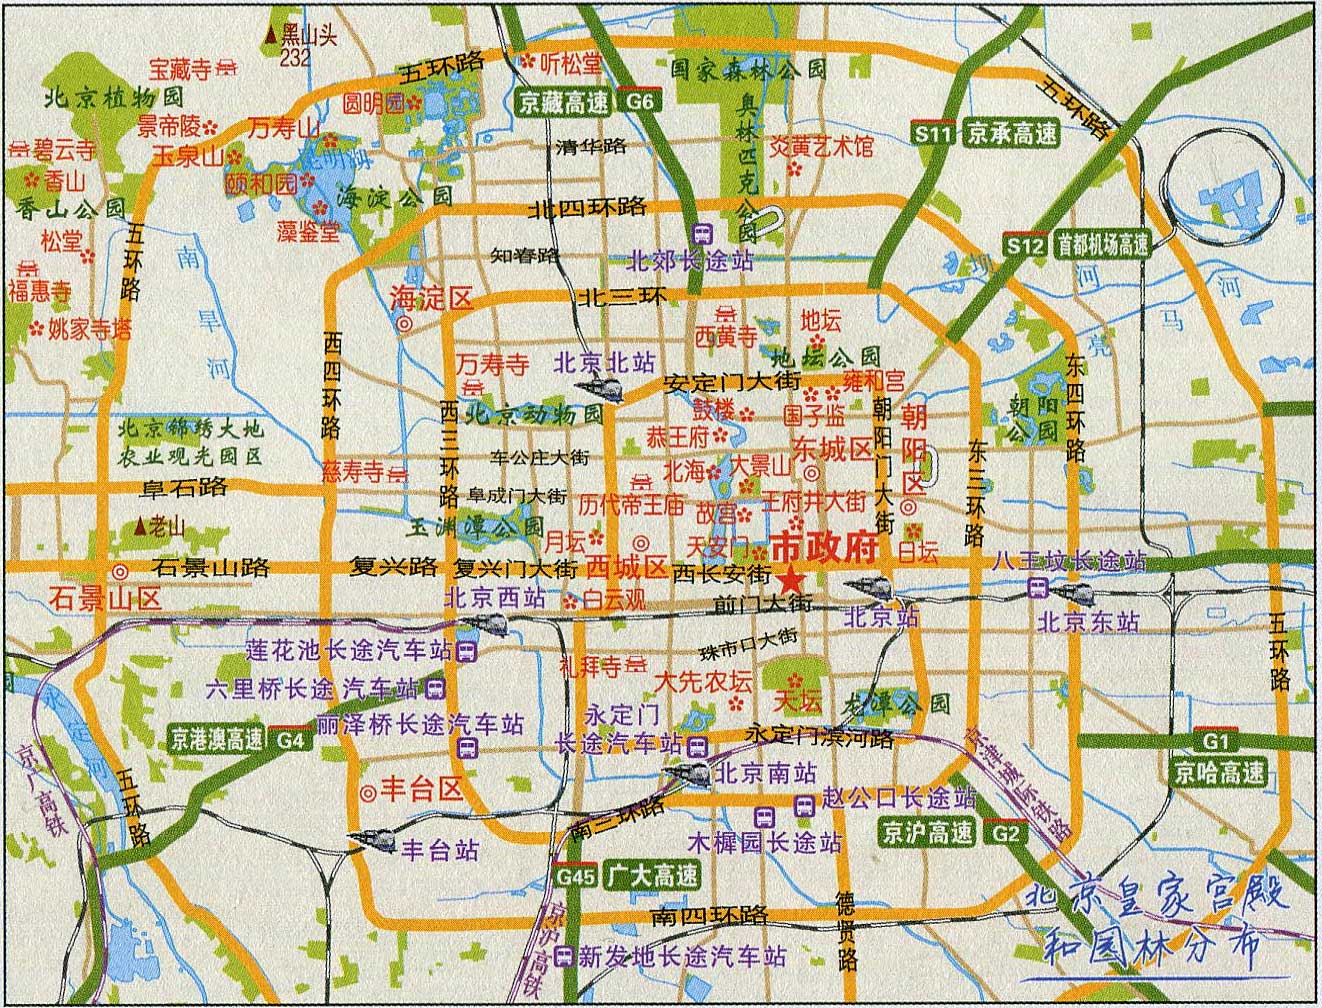 上一张地图: 北京城区旅游图  | 北京旅游 |  下一张地图: 北京景山图片